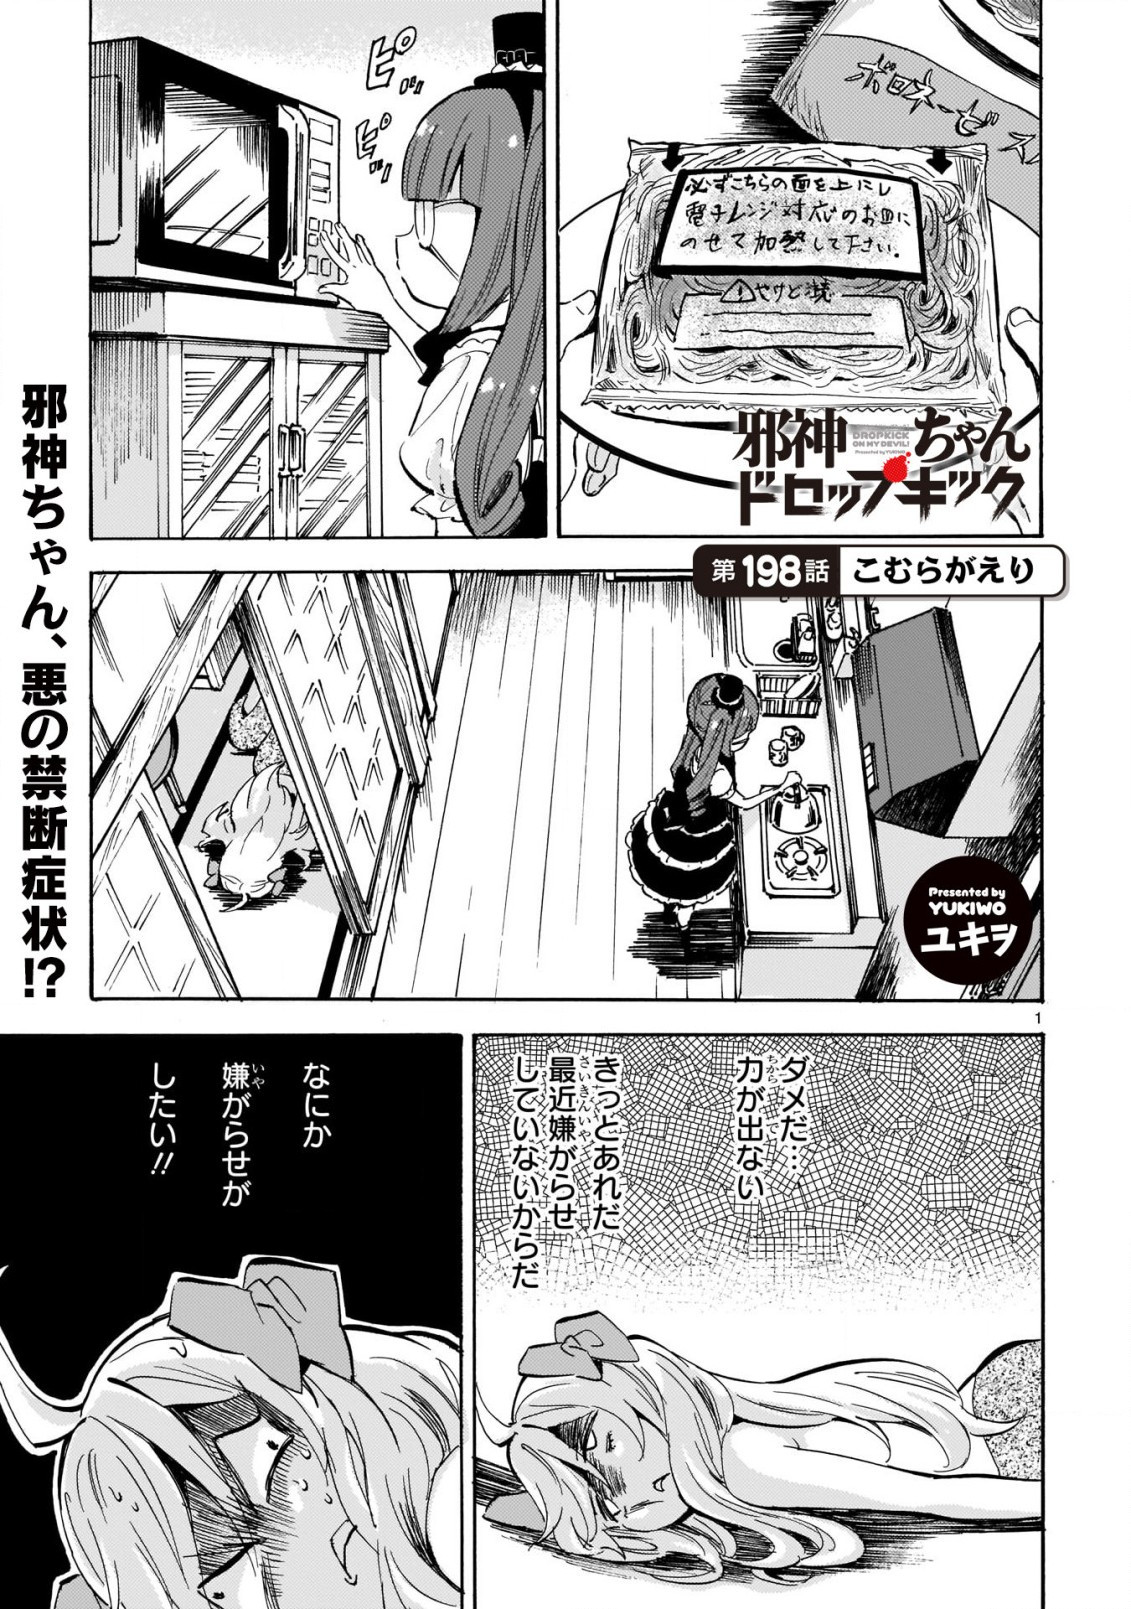 Jashin-chan Dropkick - Chapter 198 - Page 1